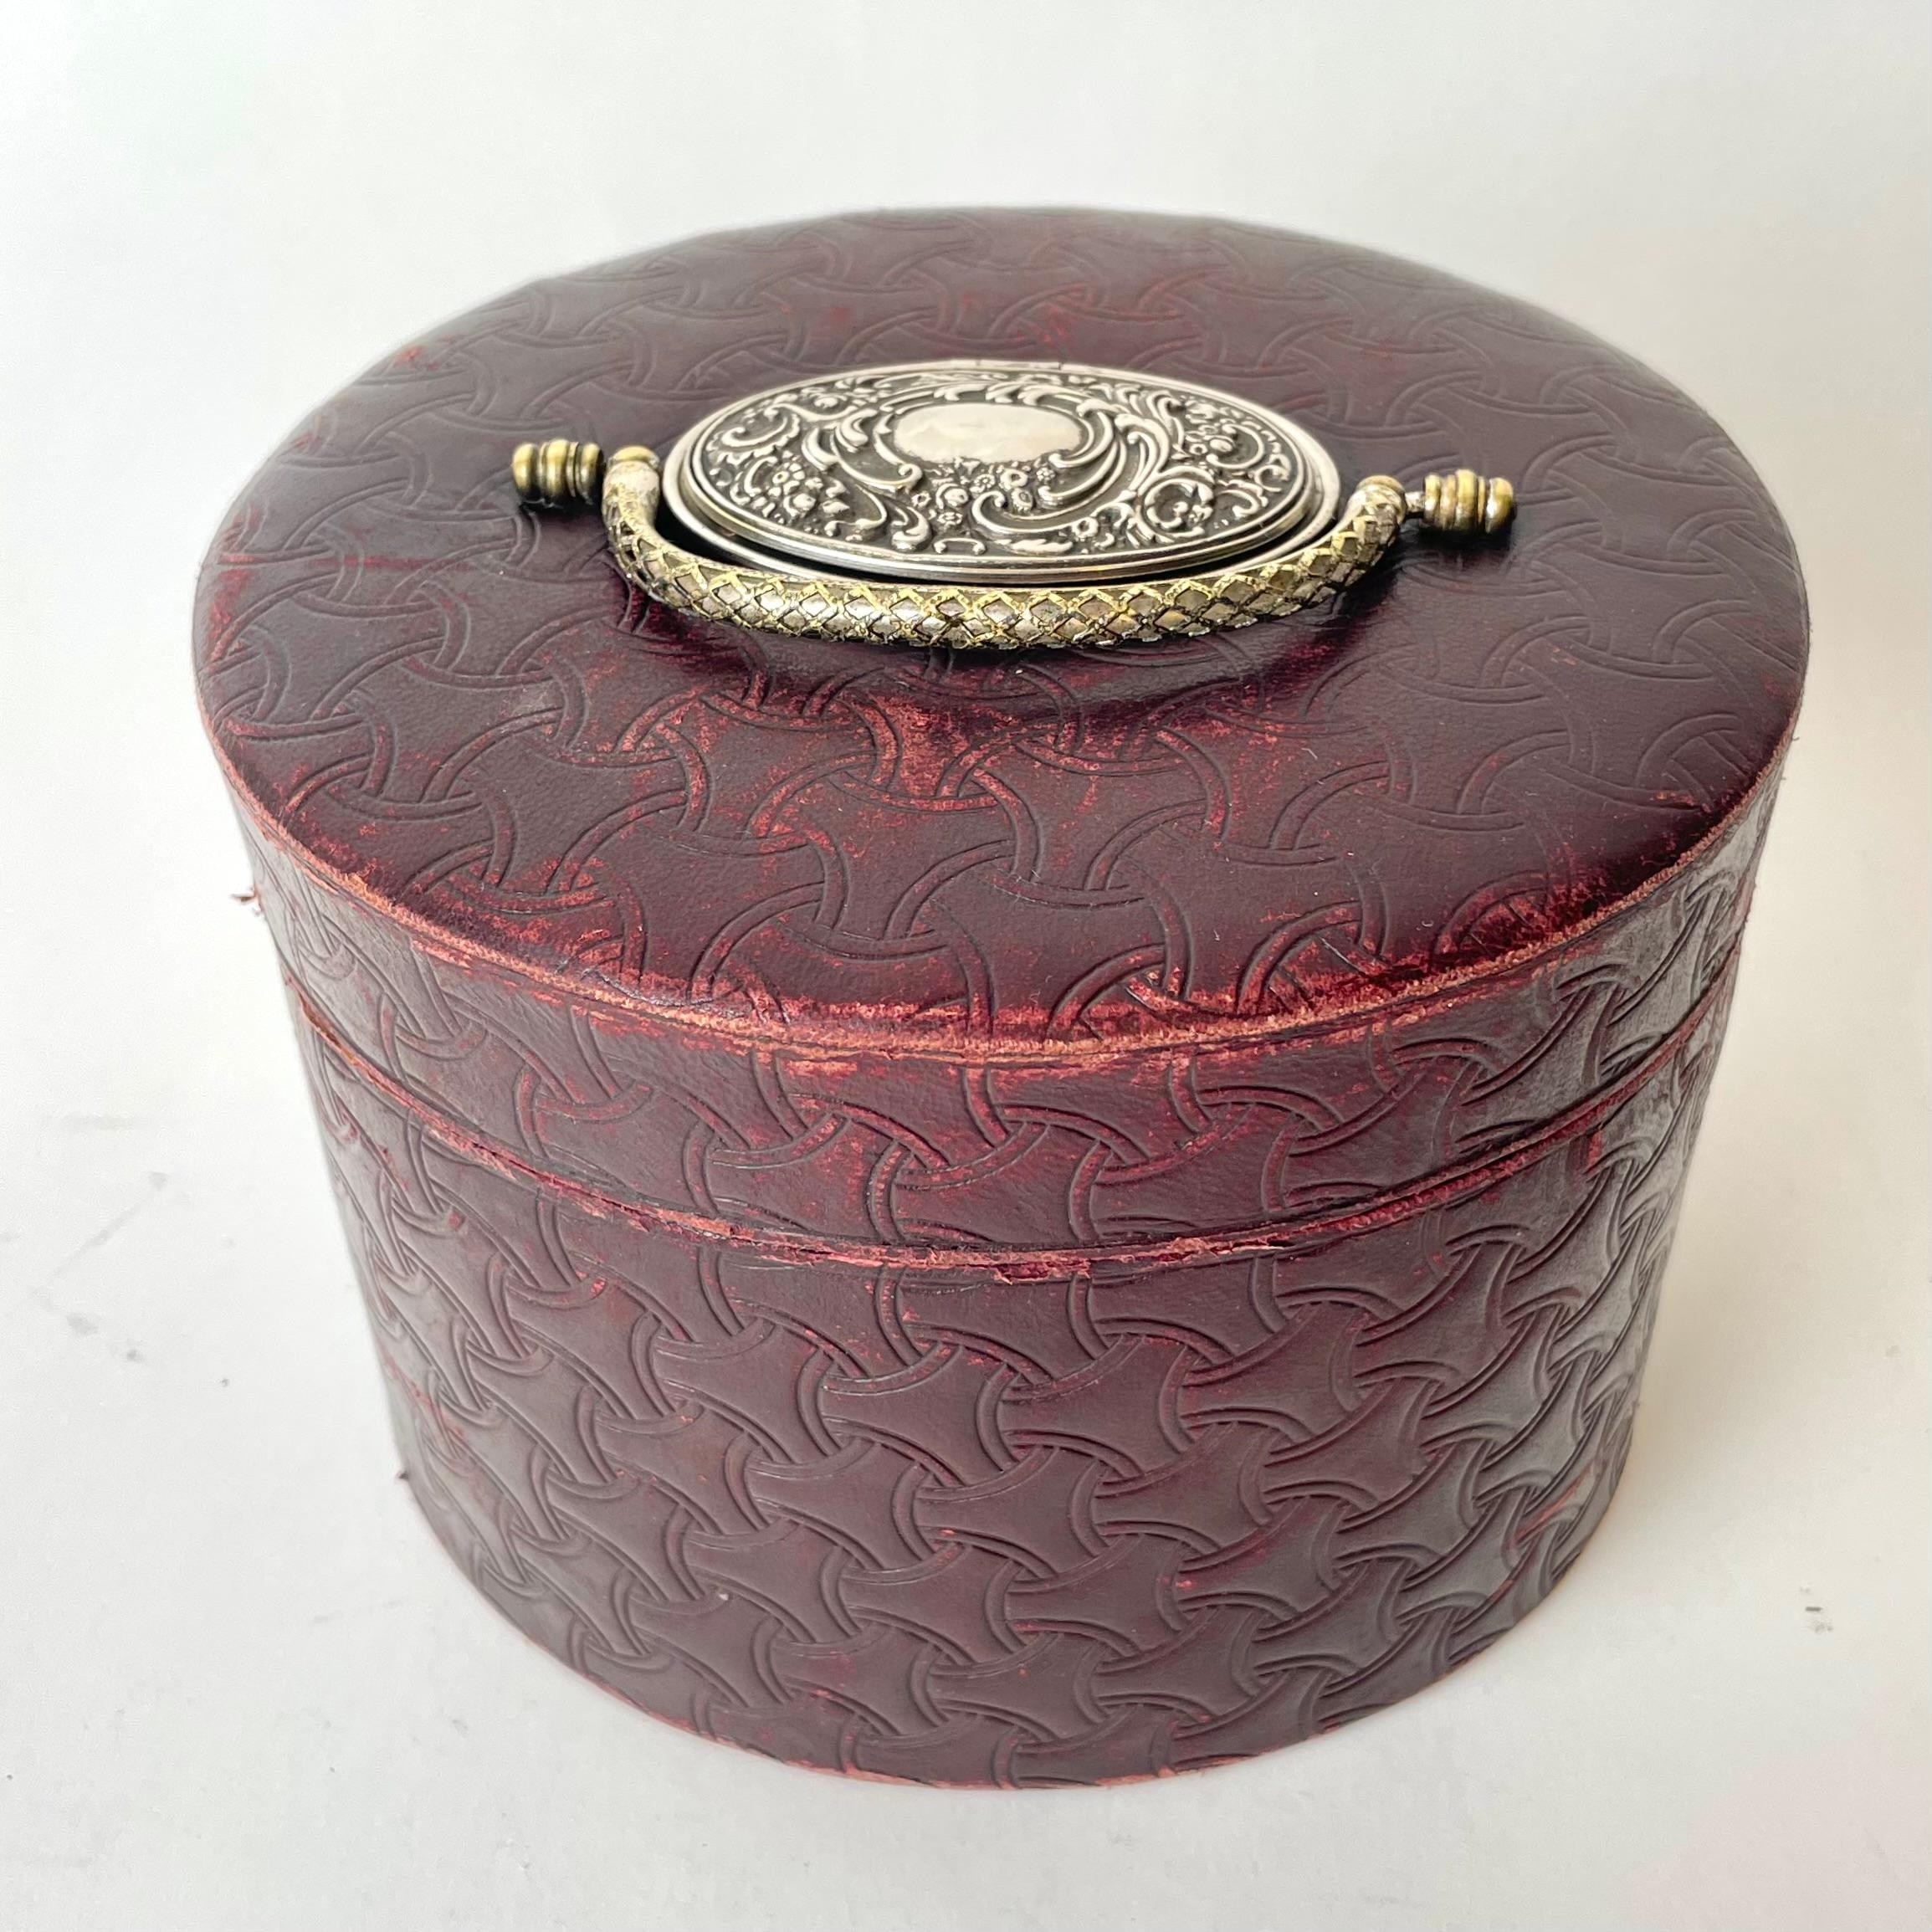 Boîte à colliers en cuir bourgogne avec une petite boîte à boutons de manchette en métal argenté sur le dessus, utilisée pour les cols détachables, 1890. Rangement supplémentaire sur le dessus, pour les boutons de manchette, les boutons de chemise